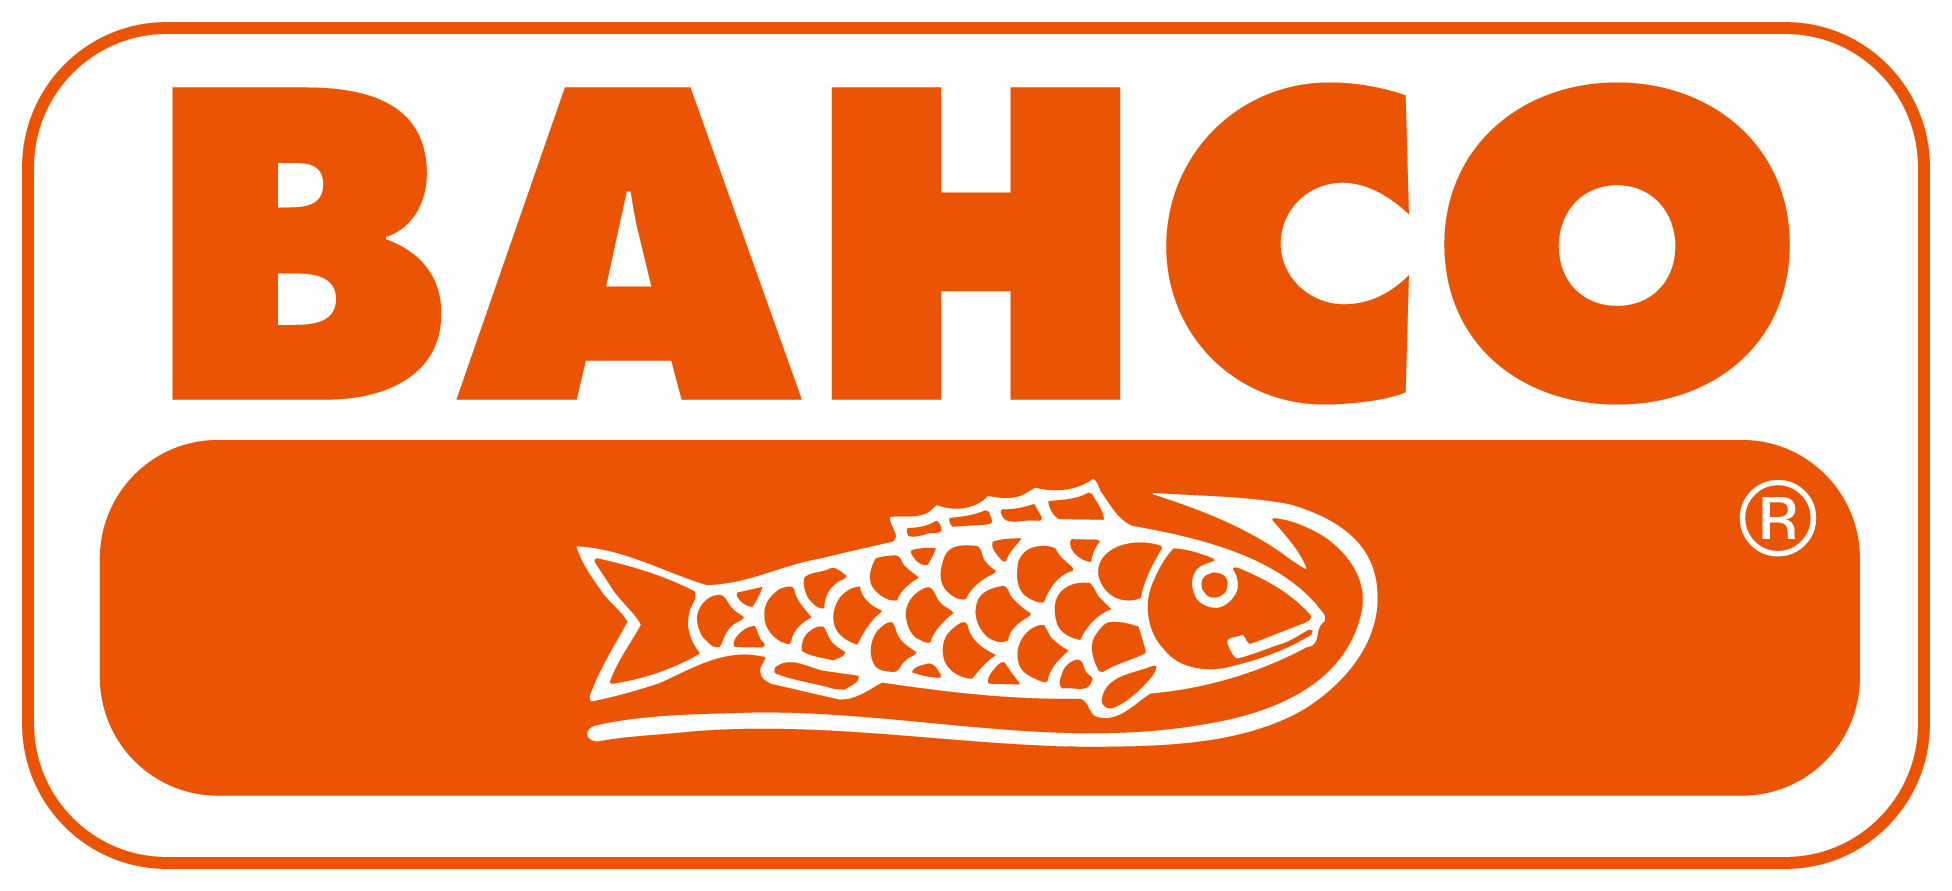 バーコ （BAHCO） | ファクトリーギア公式通販｜上質工具専門店